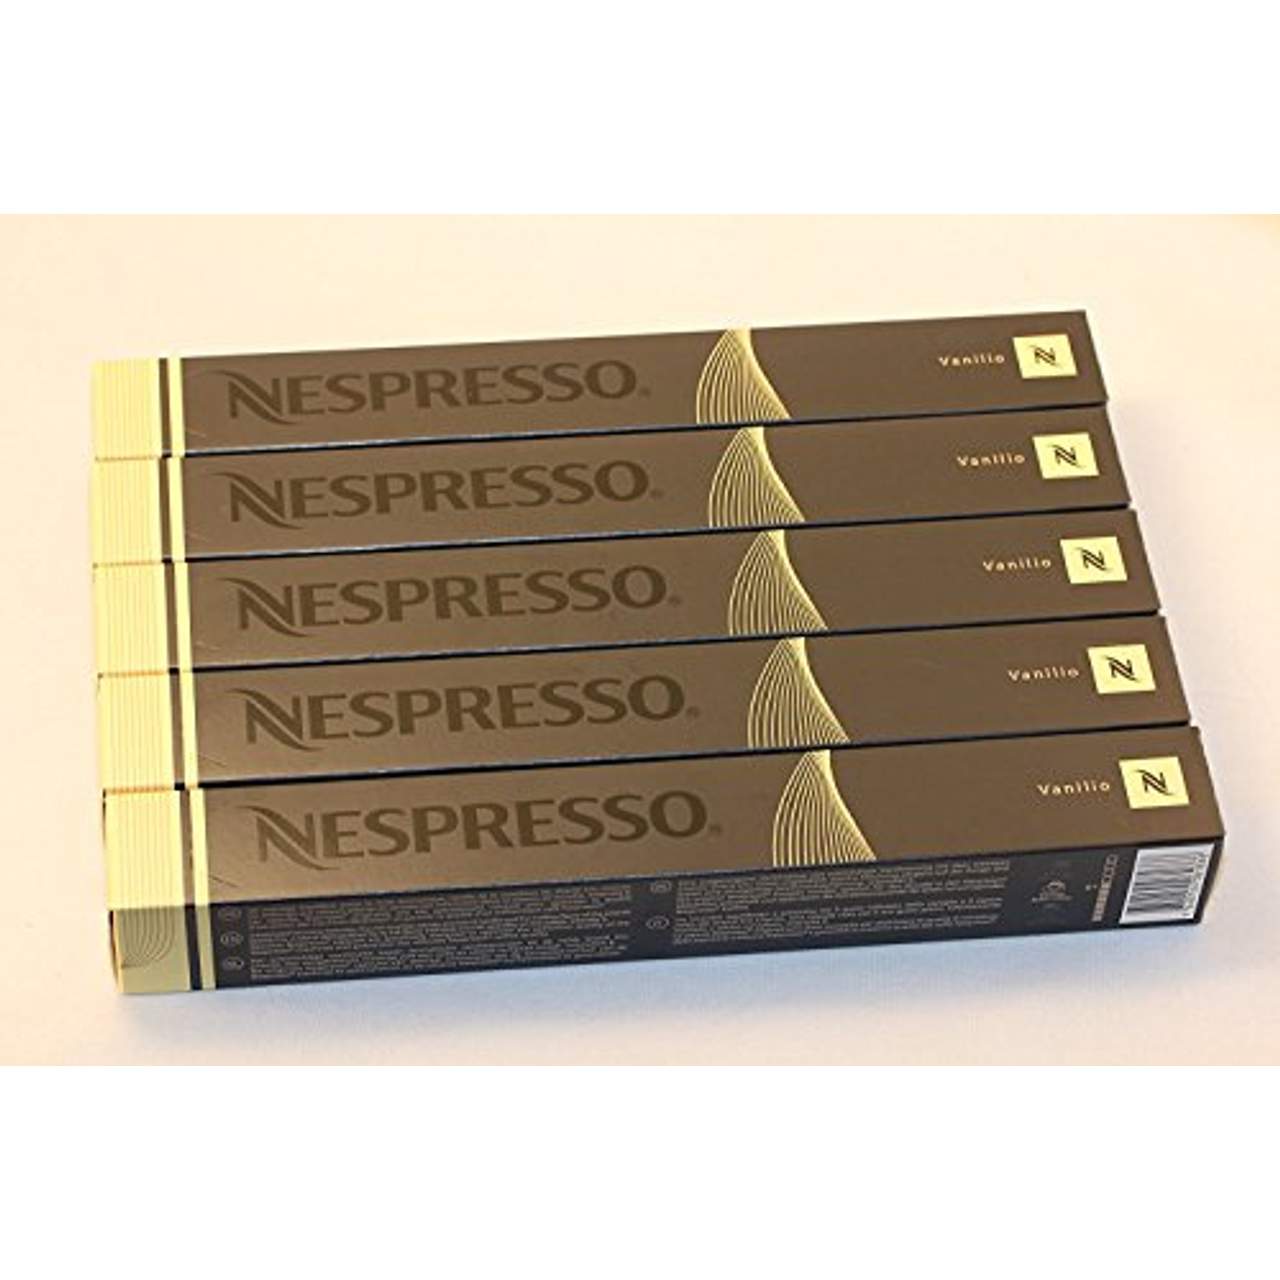 50 Vanilio Nespresso Kapseln Espresso Lungo